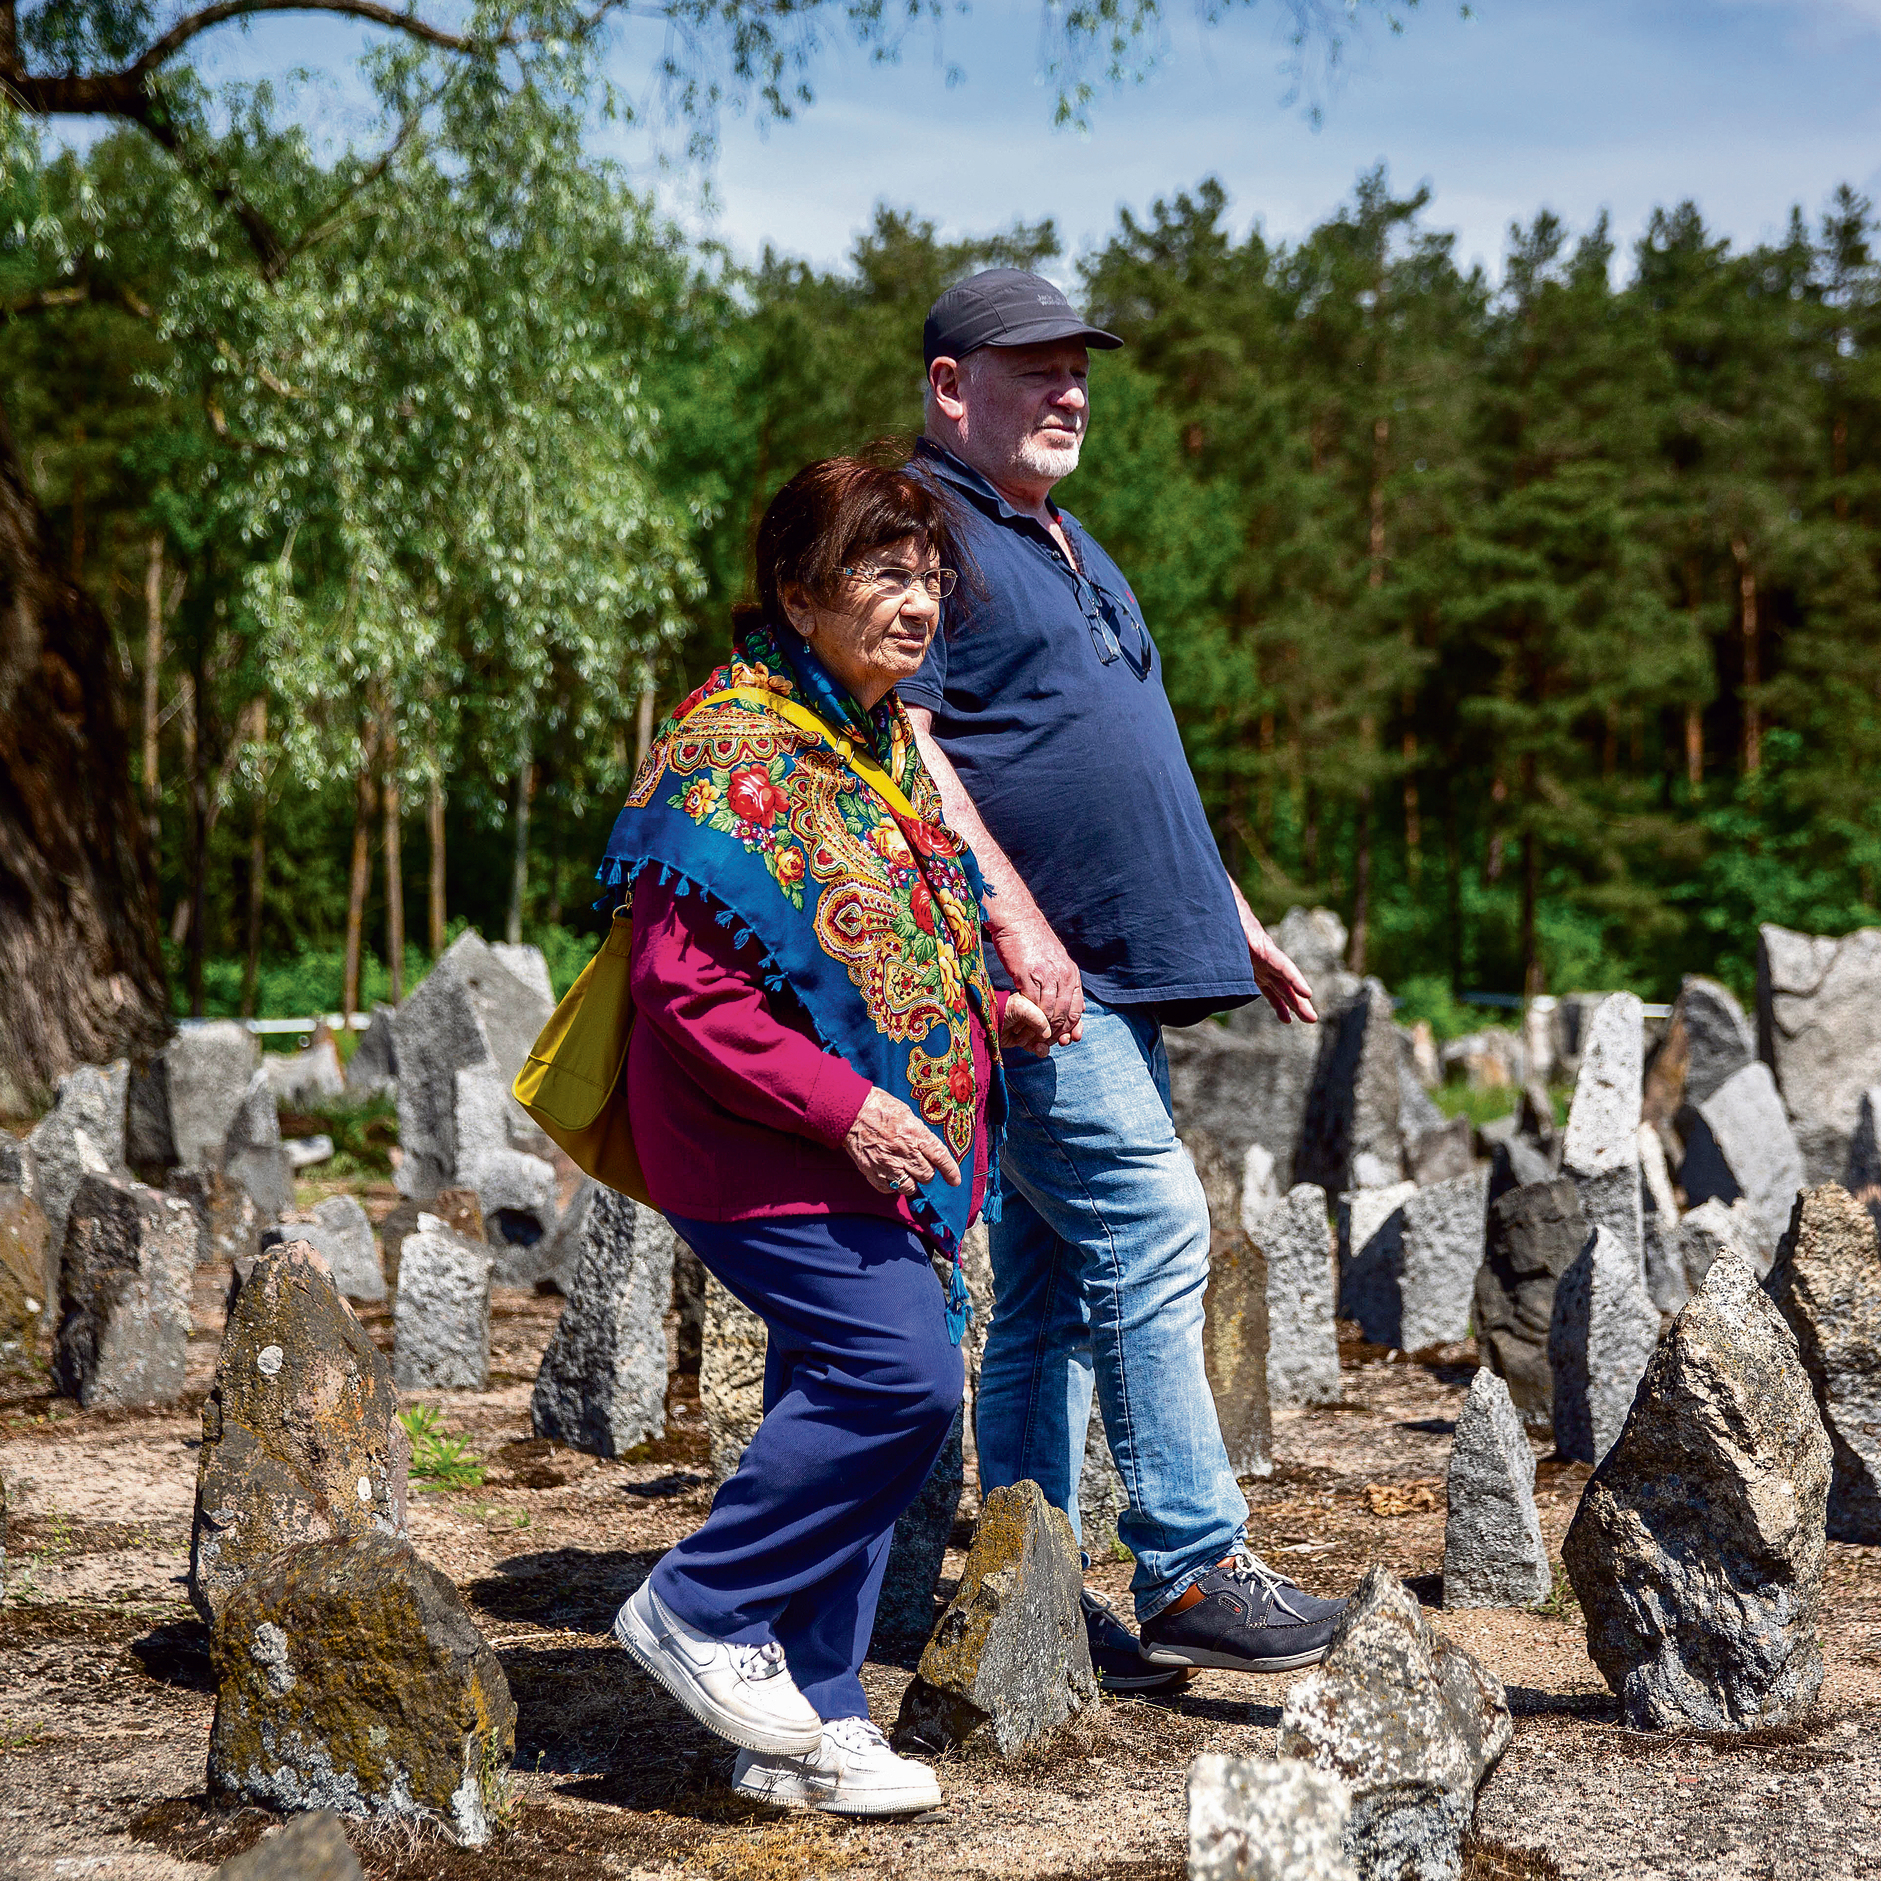 גלעד ואמו  באנדרטה בטרבלינקה.  "'אלפי אנשים בכו במקום הזה, ומגיע לסבא שלי שגם אני אבכה עליו" | צילומים: אוהד צויגנברג